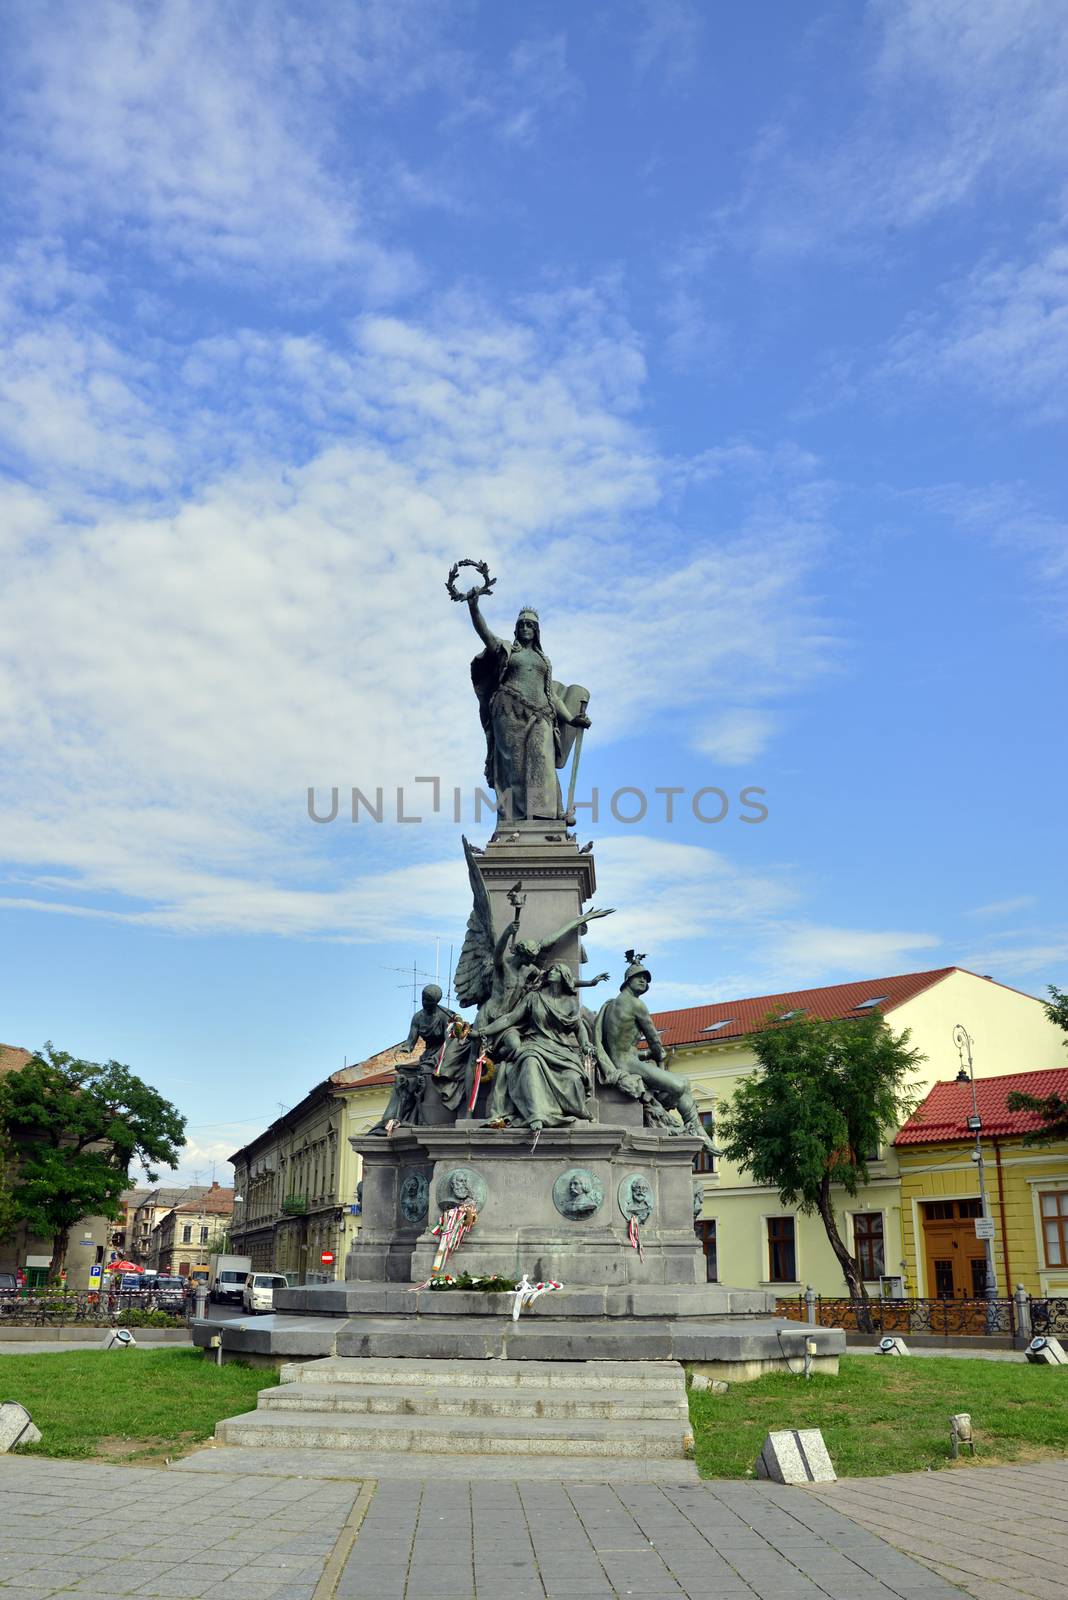 arad statue of liberty by tony4urban